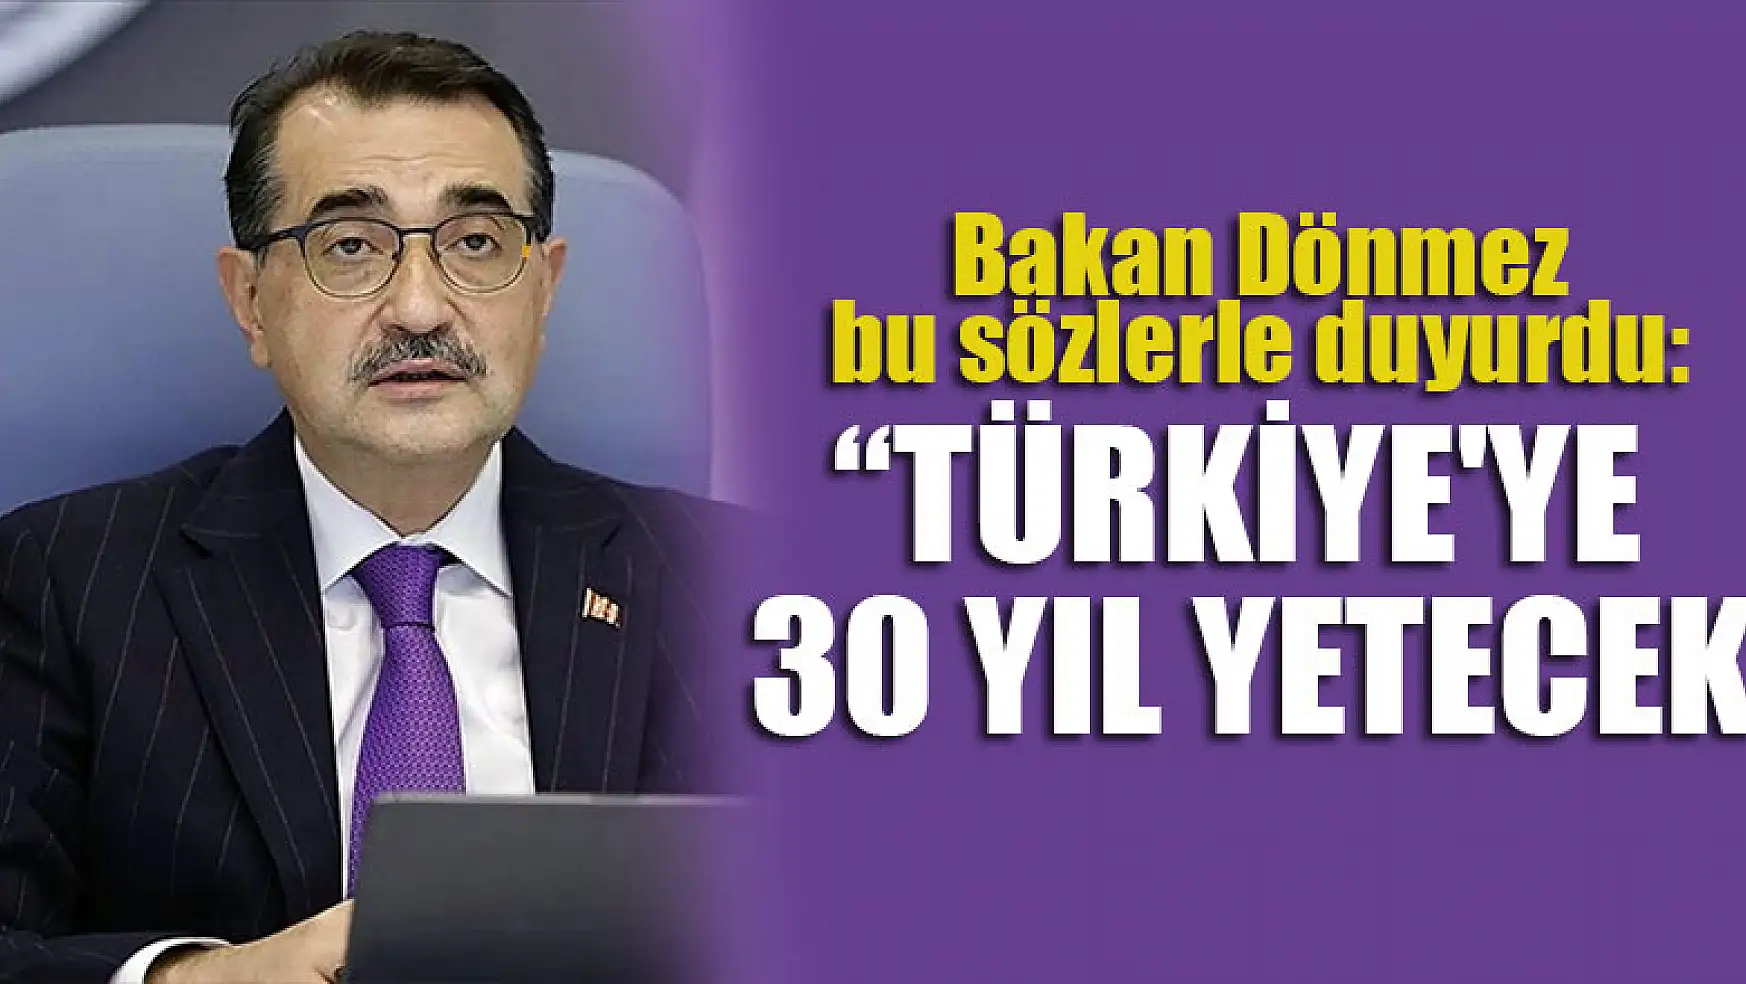 Bakan Dönmez bu sözlerle duyurdu: Türkiye'ye 30 yıl yetecek